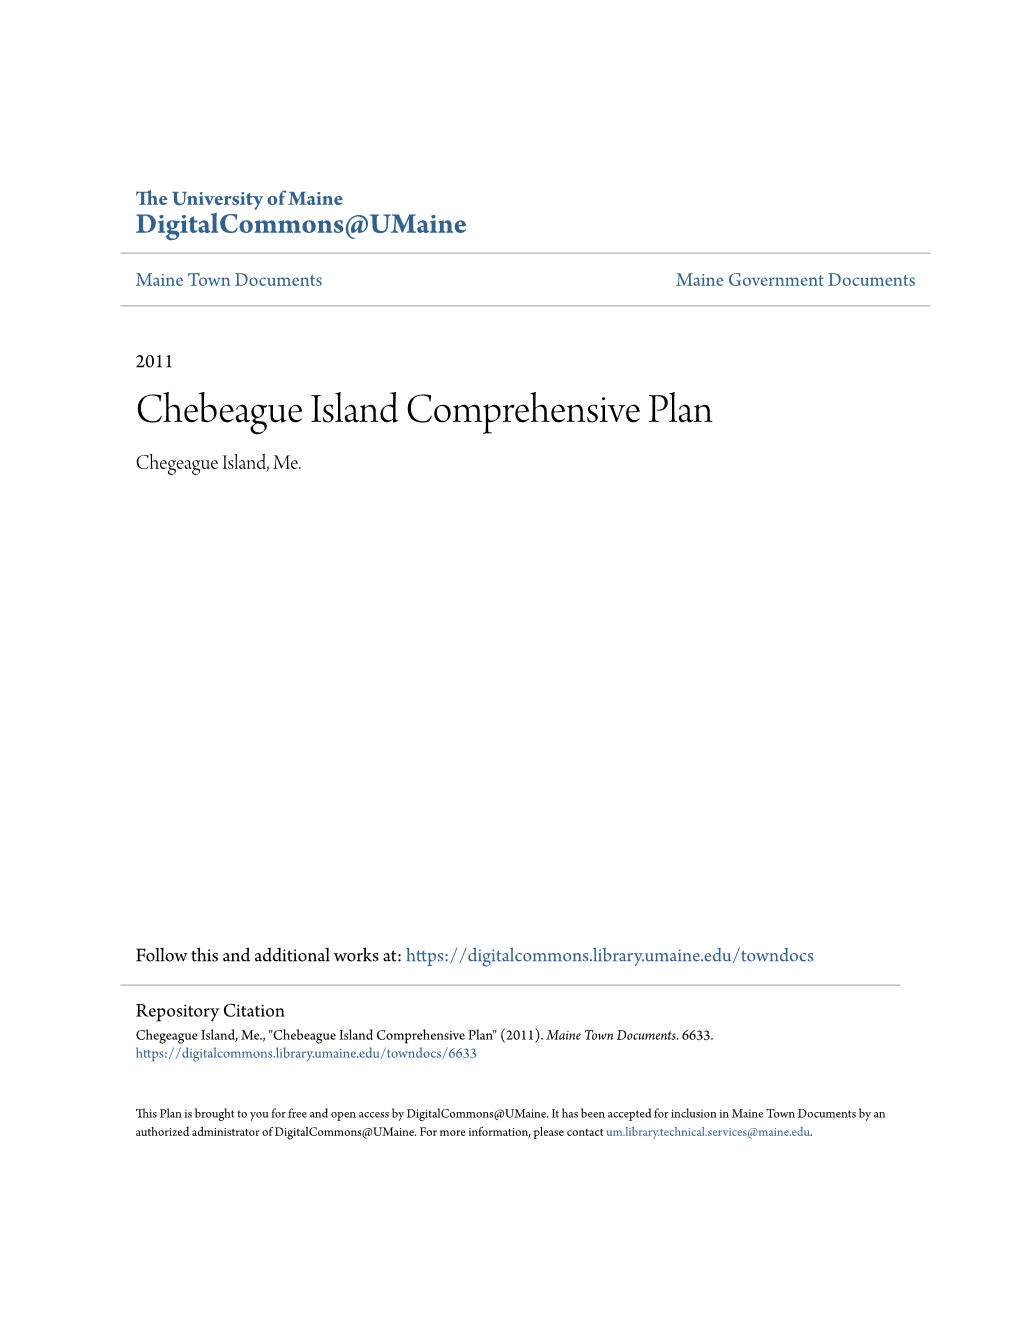 Chebeague Island Comprehensive Plan Chegeague Island, Me